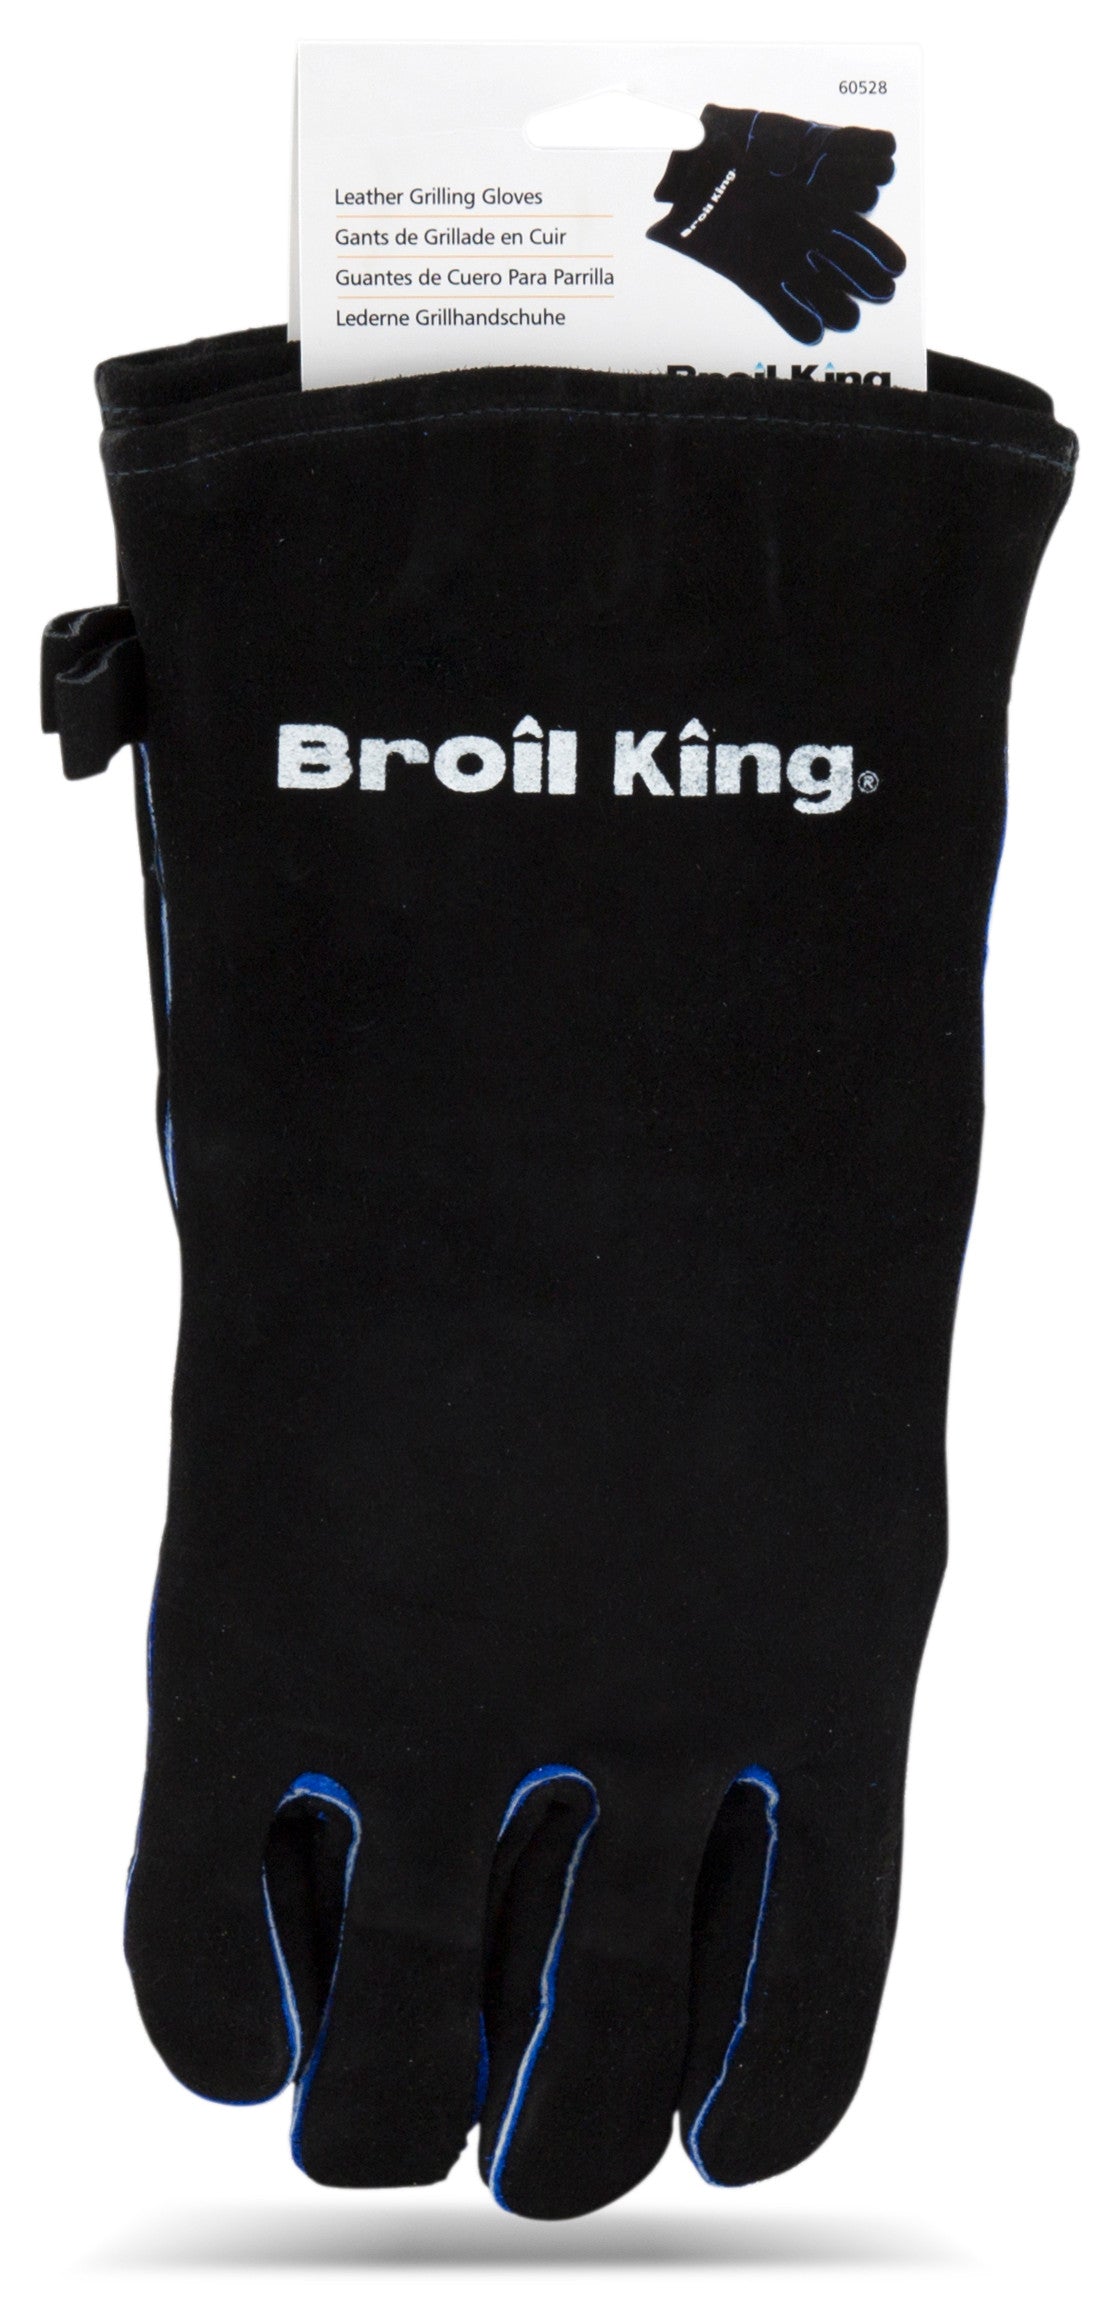 Broil King Grillhandschuh Leder